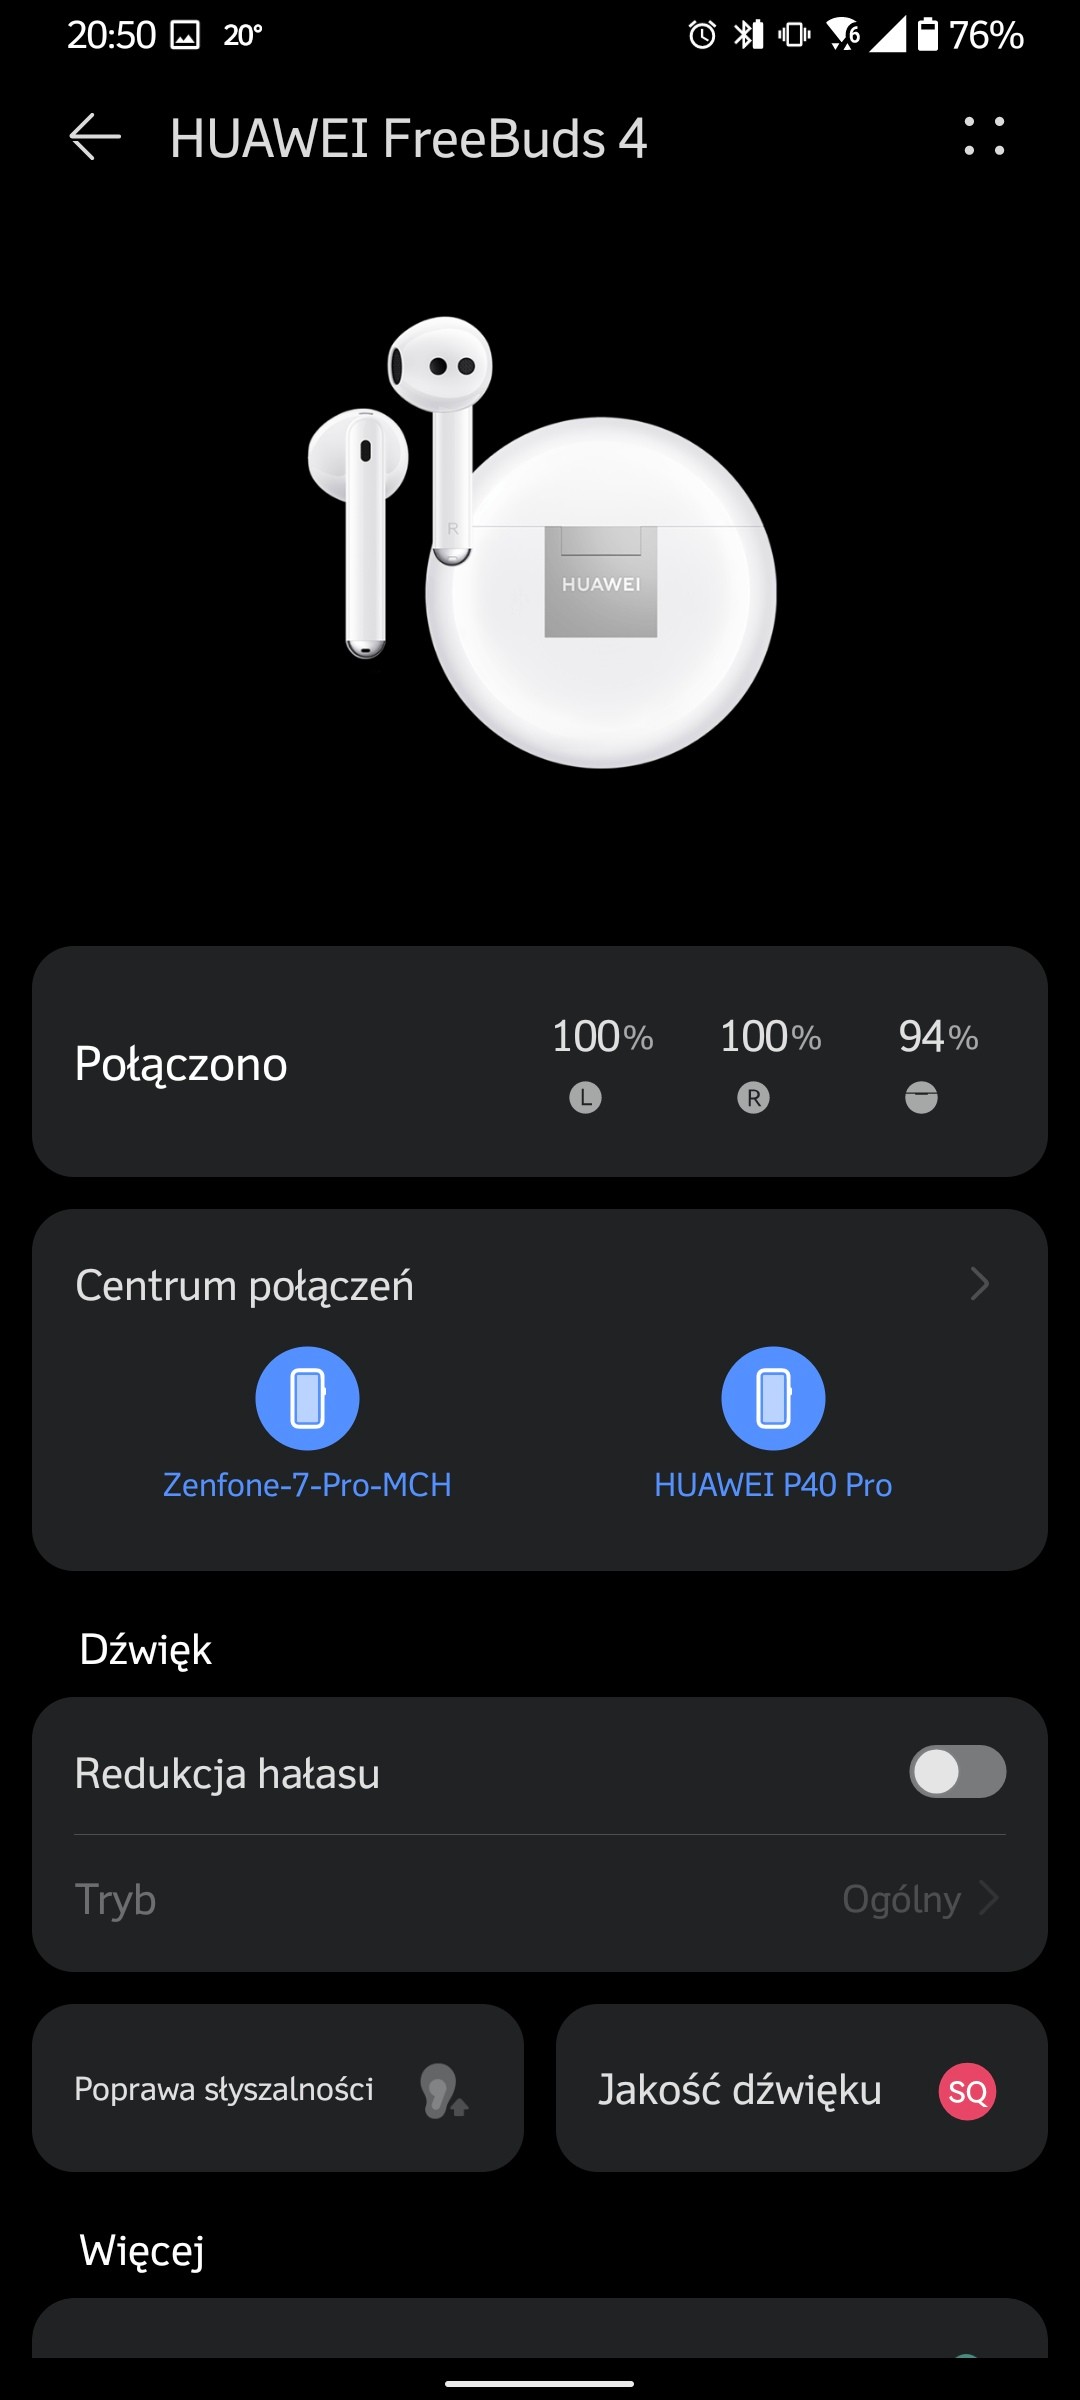 Recenzja Huawei Freebuds 4 - Parowanie z Androidem - fot. Tabletowo.pl